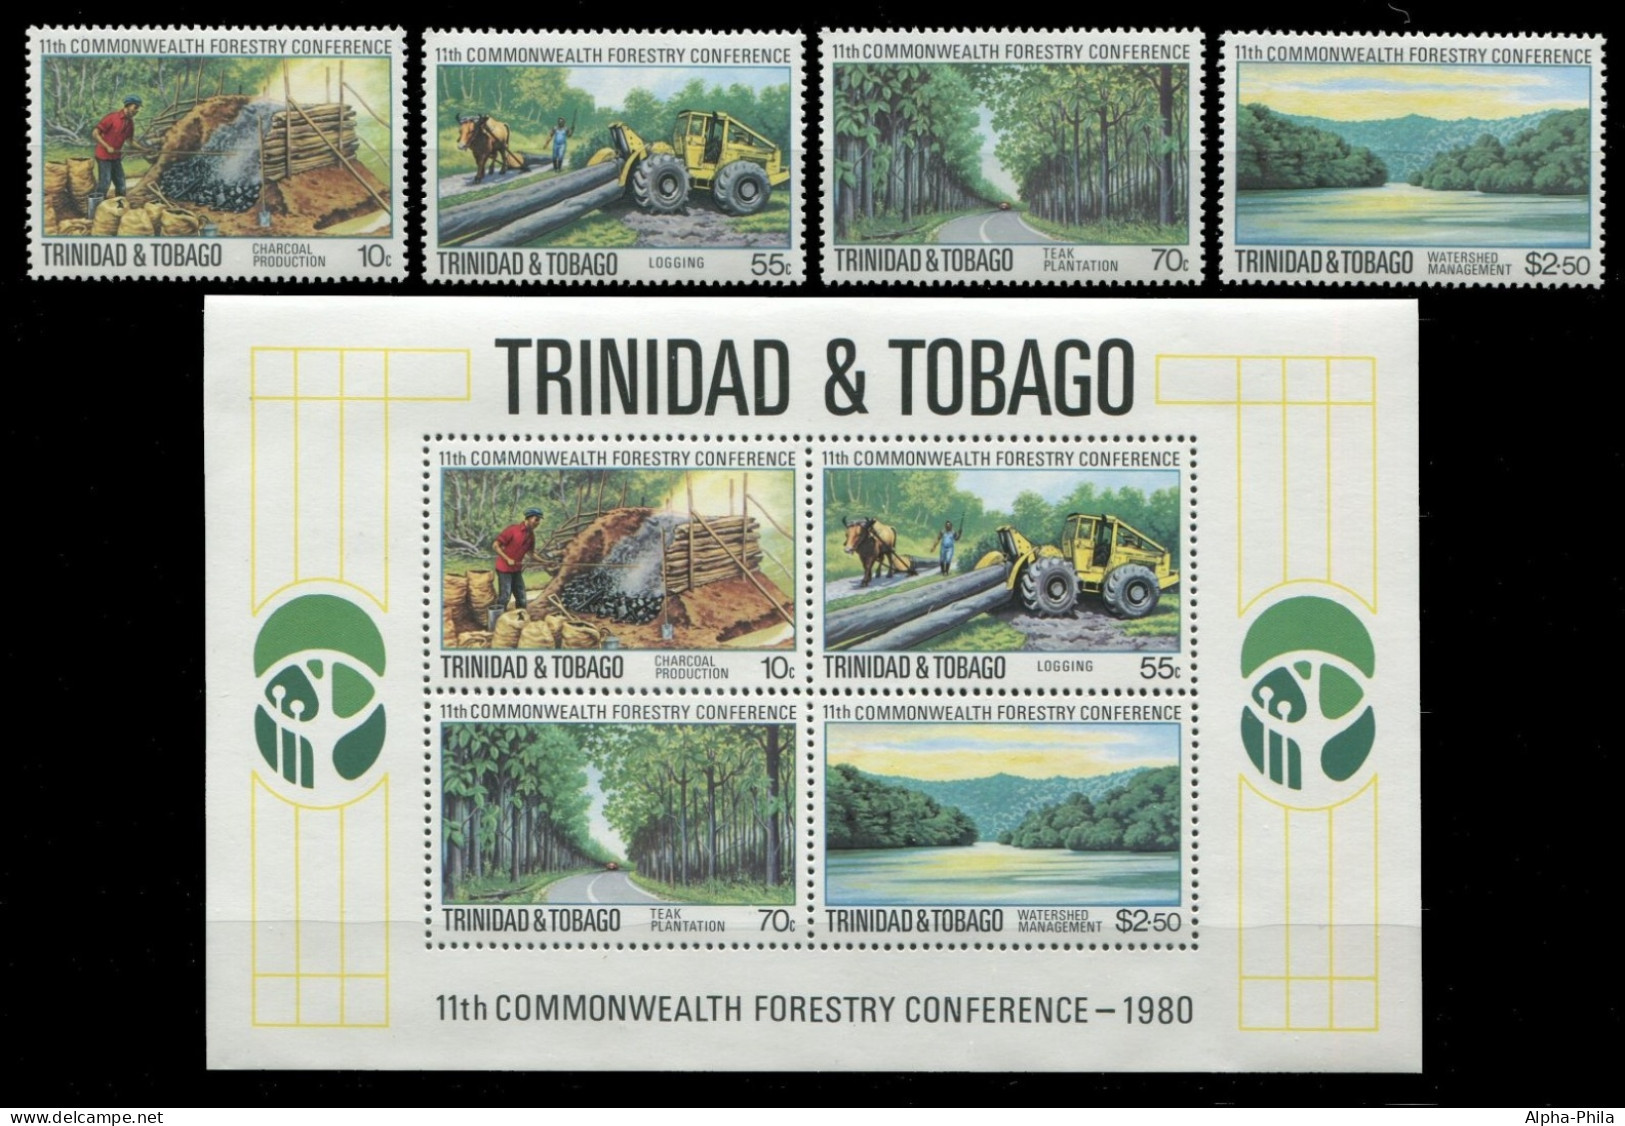 Trinidad & Tobago 1980 - Mi-Nr. 420-423 & Block 32 ** - MNH - Wald / Forest - Trinidad & Tobago (1962-...)